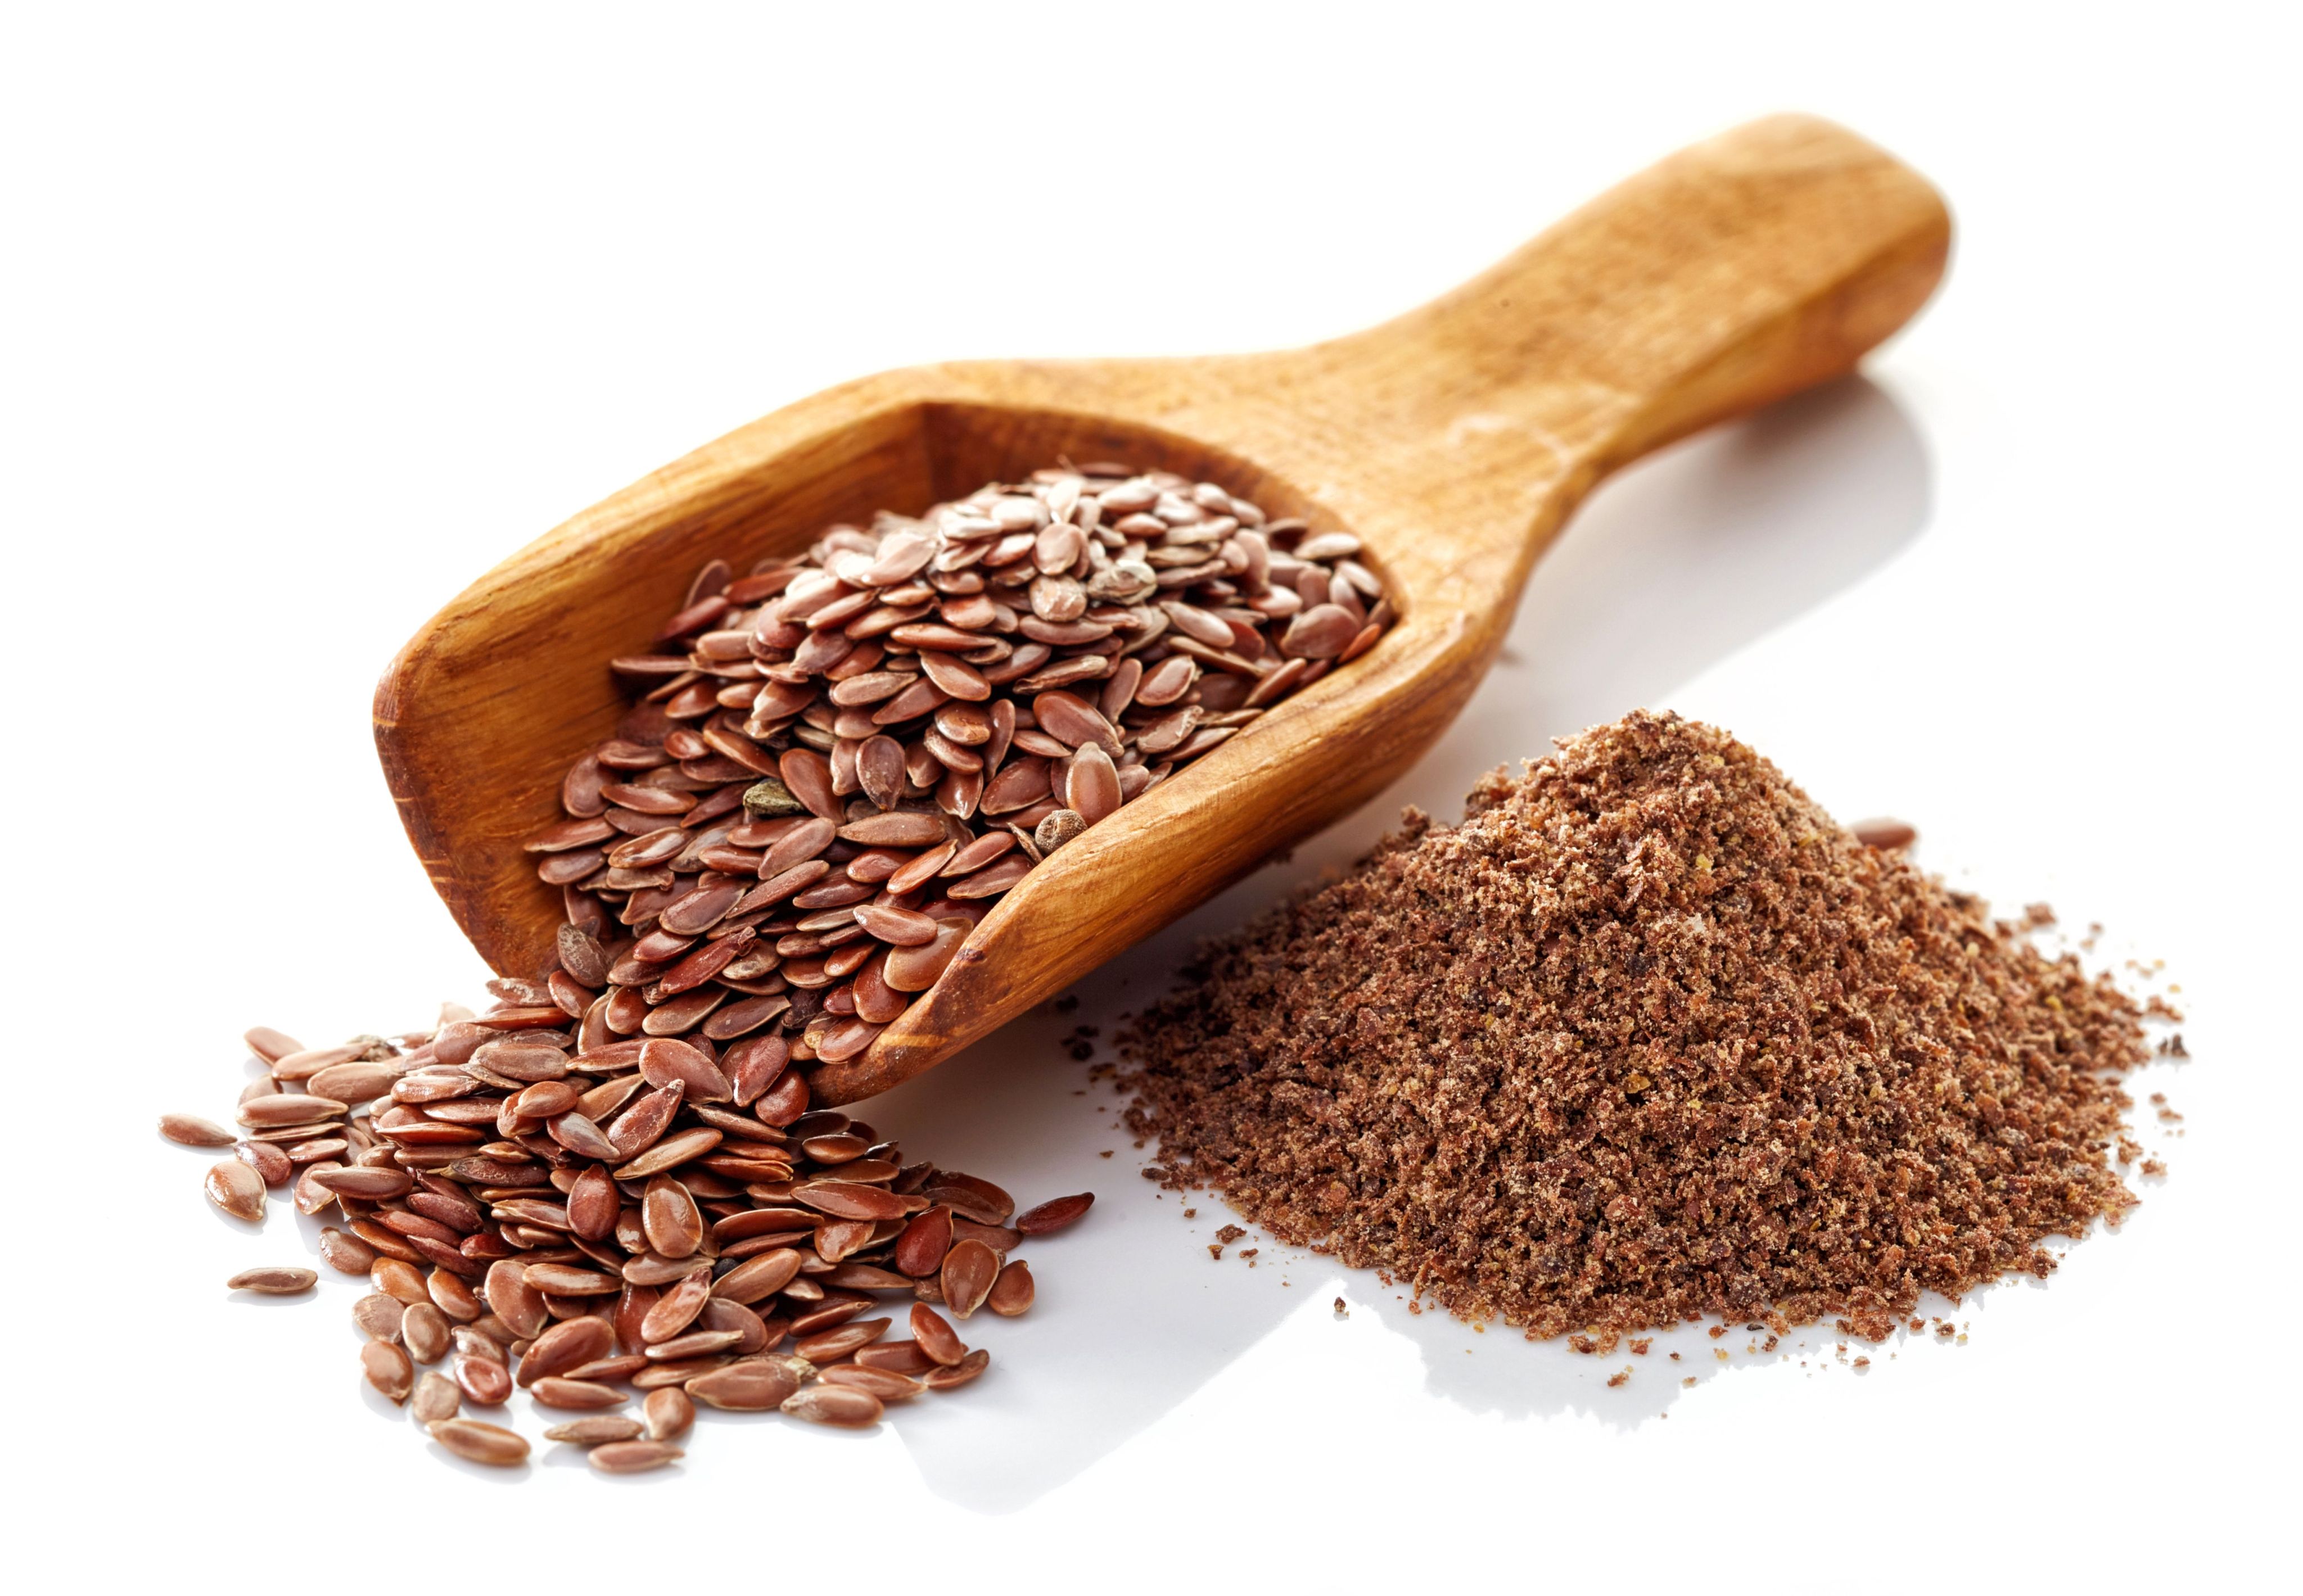 Cómo consumir semillas de lino adecuadamente?